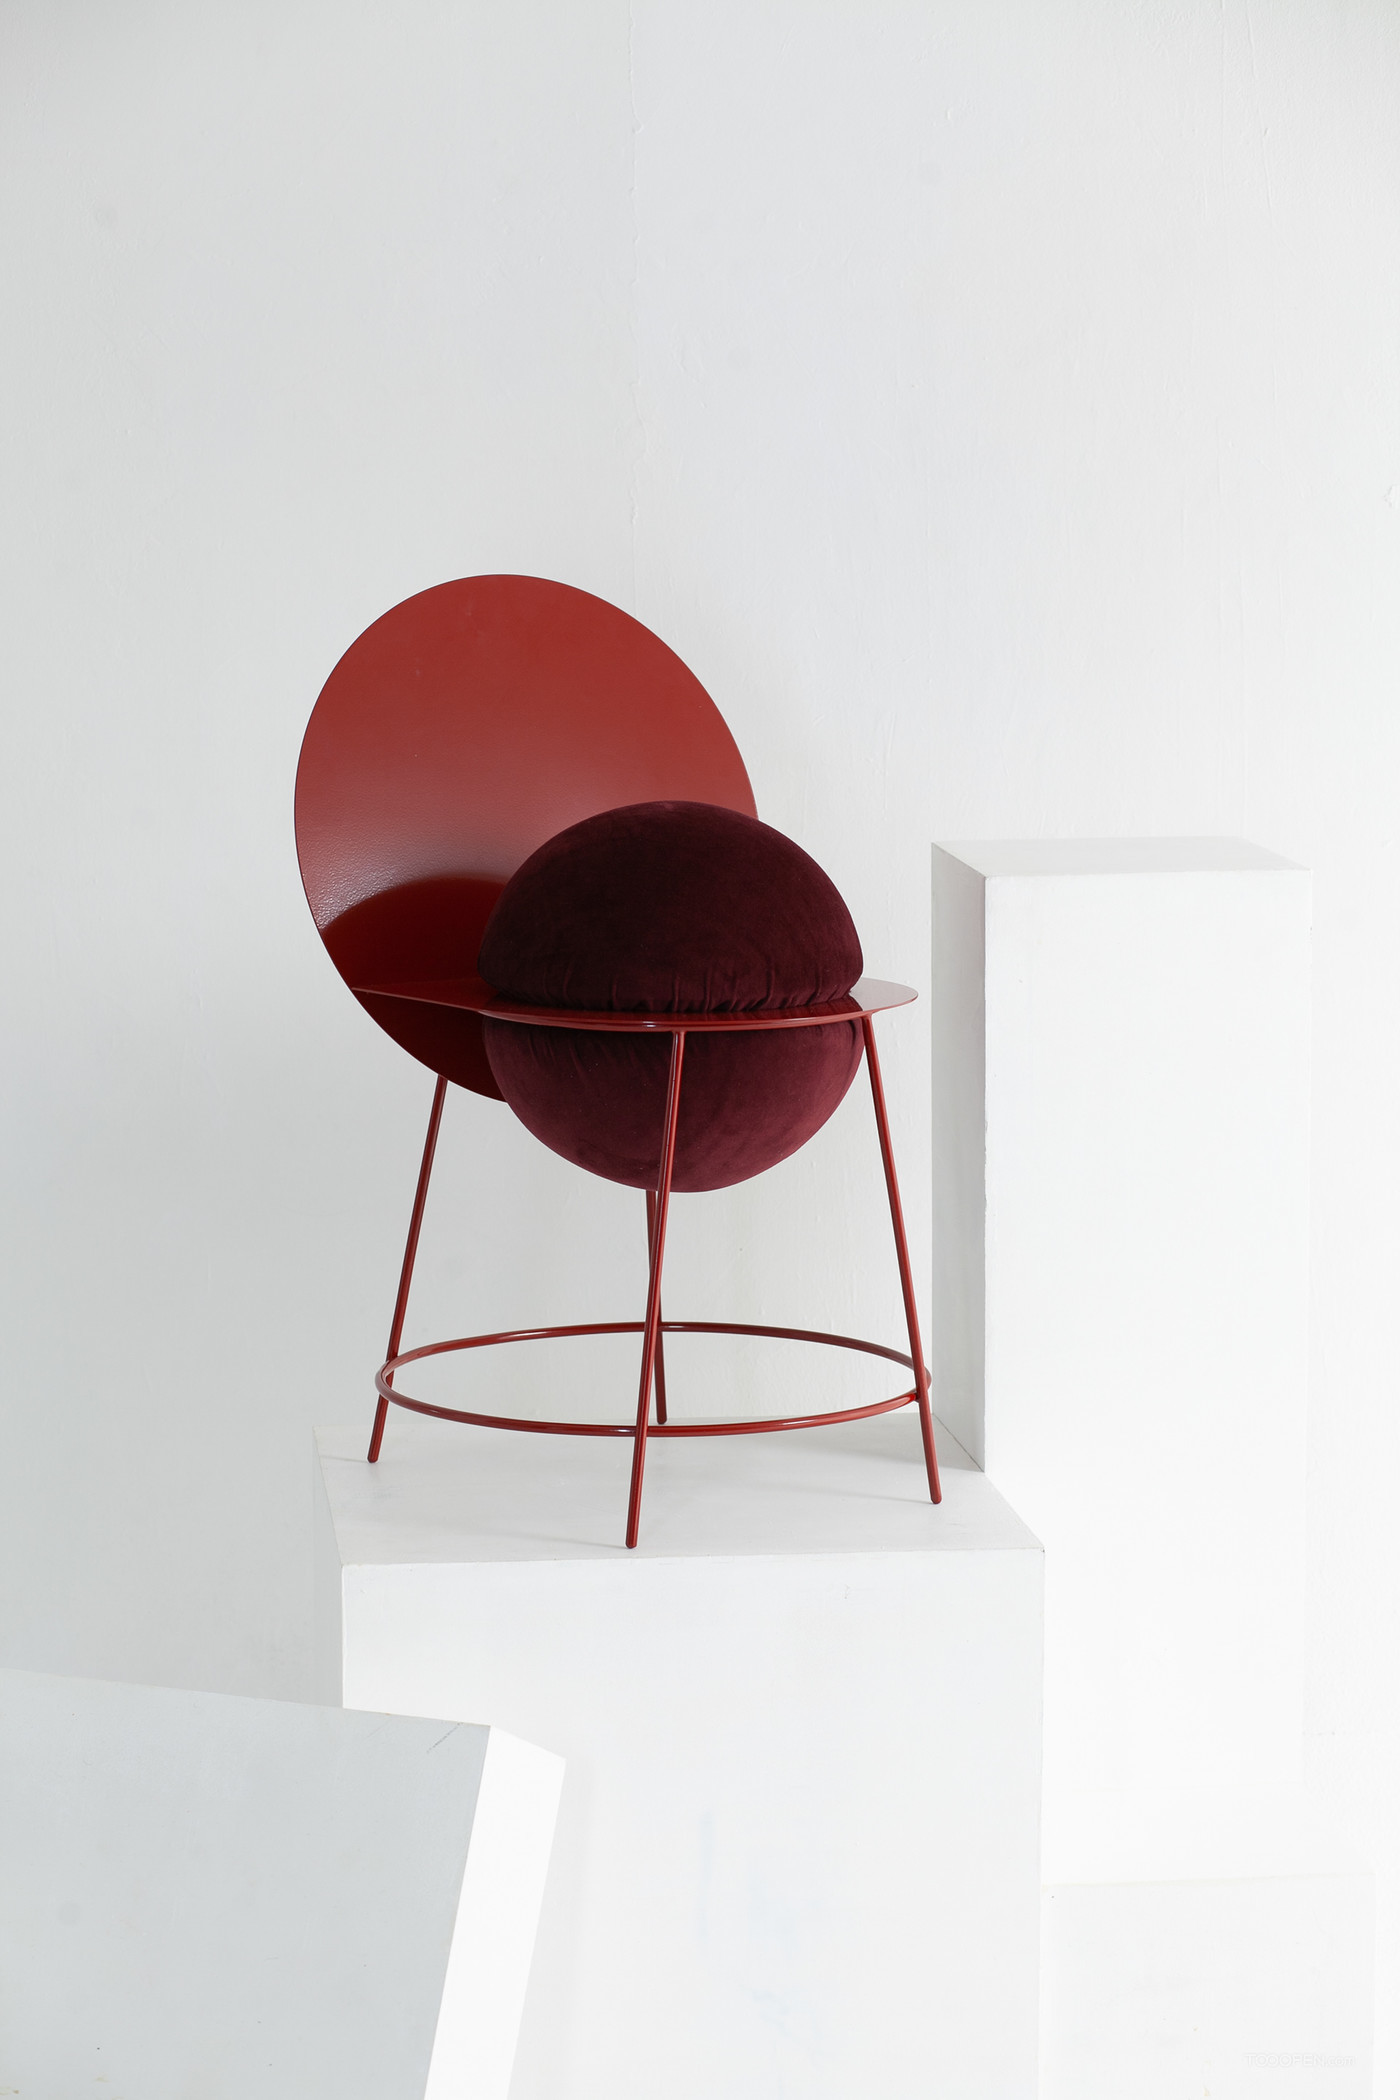 国外创意圆形几何椅家具设计欣赏-01